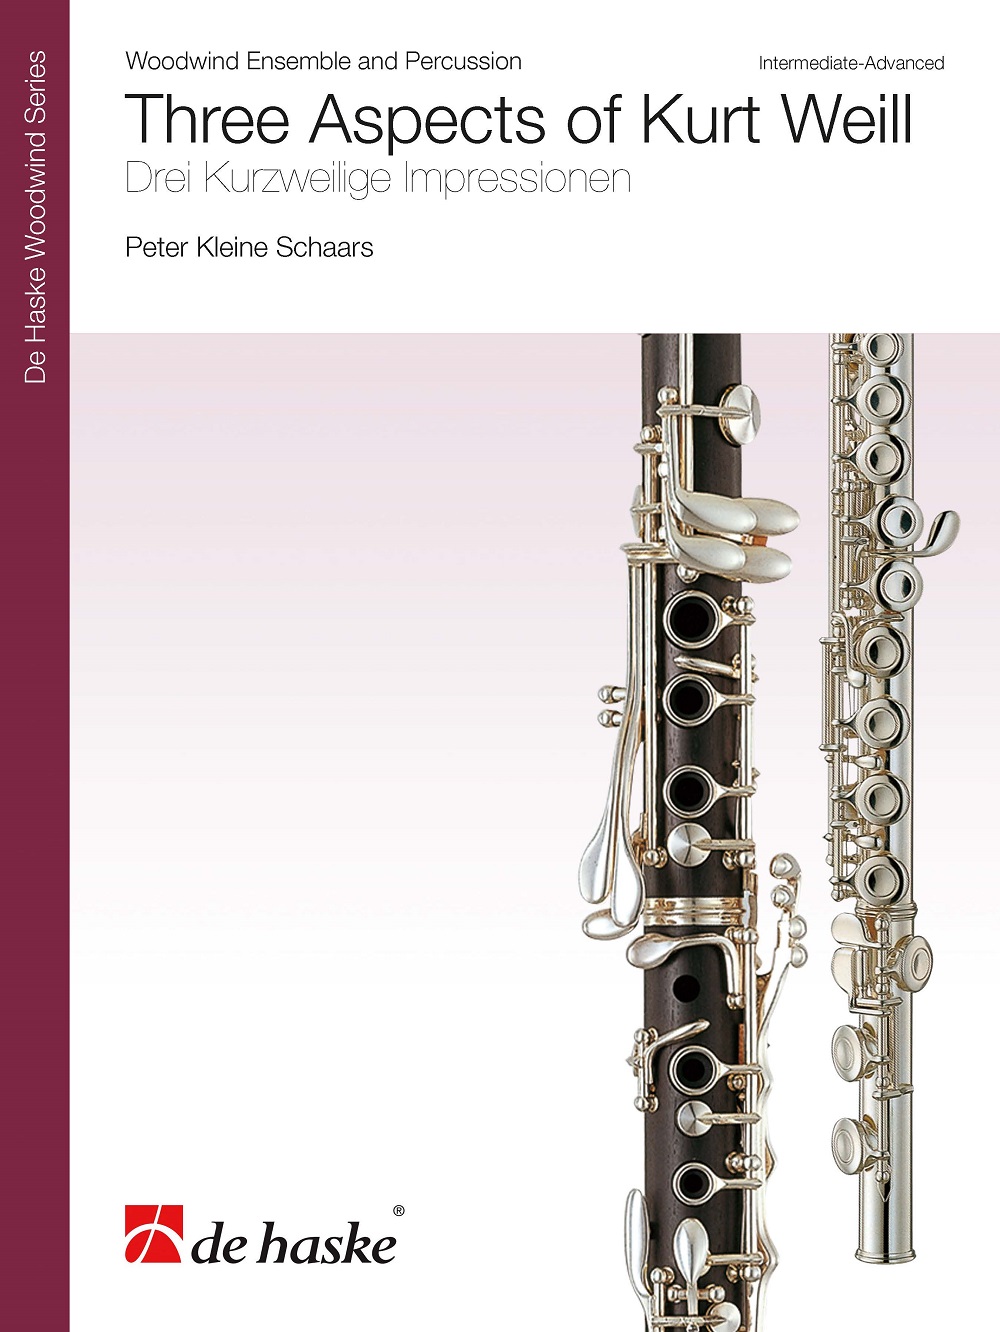 Peter Kleine Schaars: Three Aspects of Kurt Weill: Woodwind Ensemble: Score and